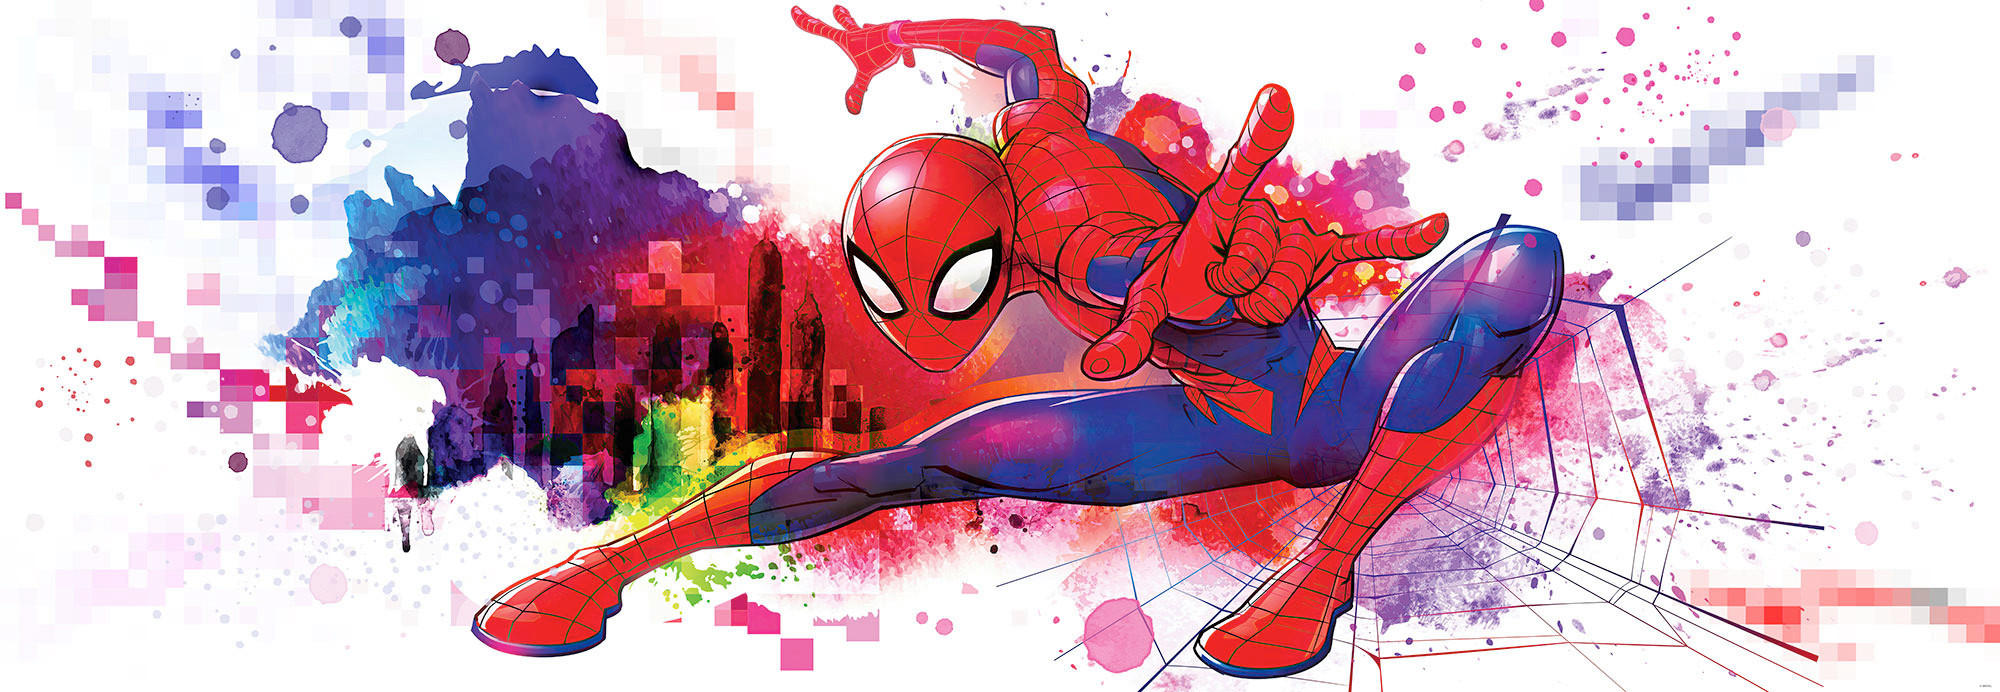 Komar Fototapete Spider-Man Graffiti Art 4-4123 multicolor B/H: ca. 368x127 cm Spider-Man Graffiti Art 4-4123 - multicolor (368,00/127,00cm)